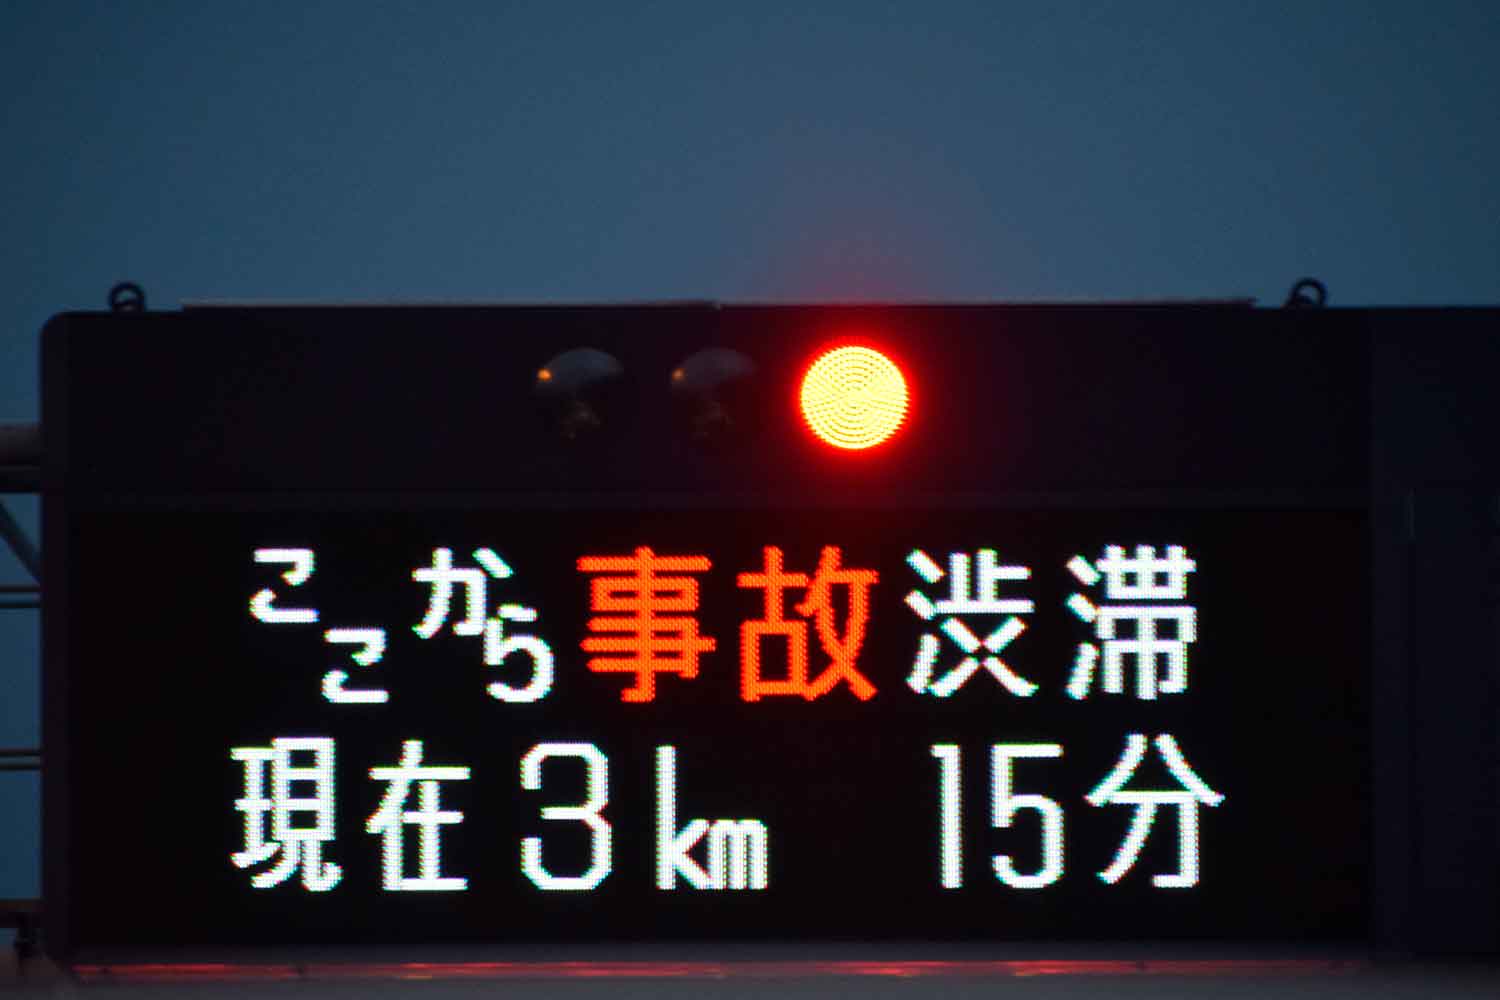 渋滞情報を表示している高速道路の電光掲示板 〜 画像5